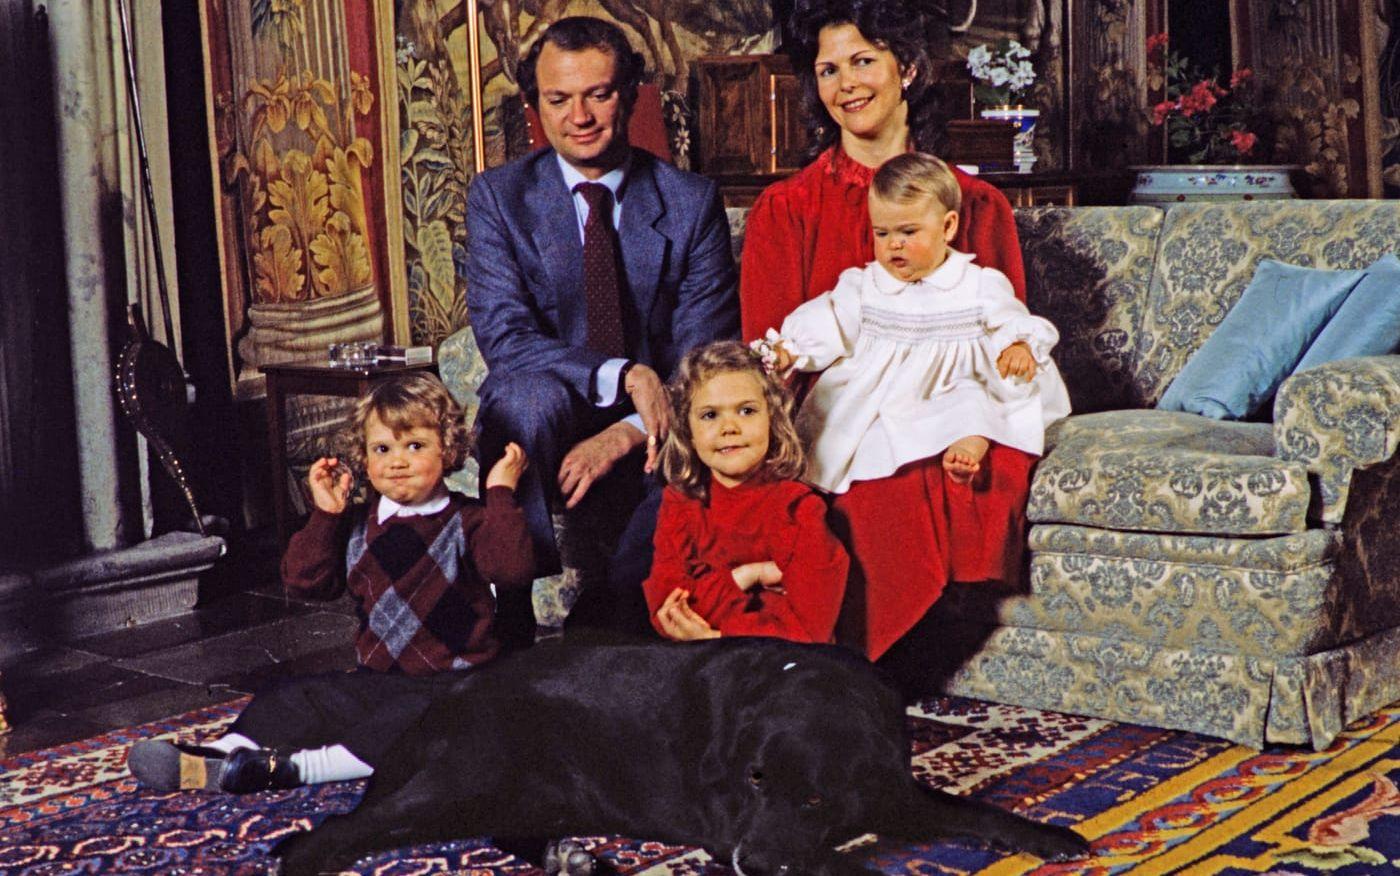 1983: Gruppfoto av svenska kungafamiljen fr. v: prins Carl Philip, kung Carl XVI Gustaf, kronprinsessan Victoria, drottning Silvia och prinsessan Madeleine i samband med kungens 37-årsdag på Stockholms slott 30:e april 1983.